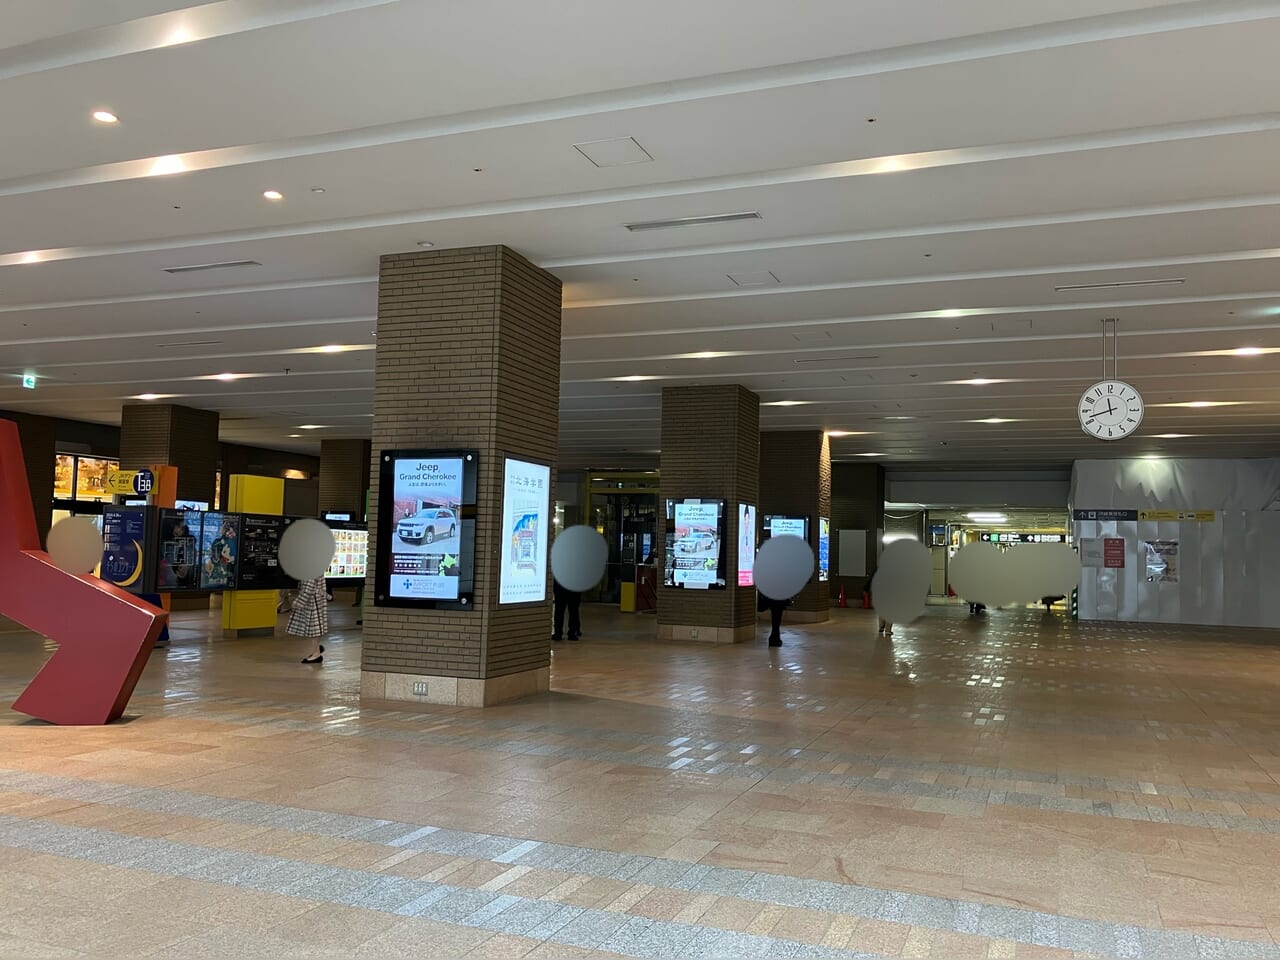 札幌駅南口